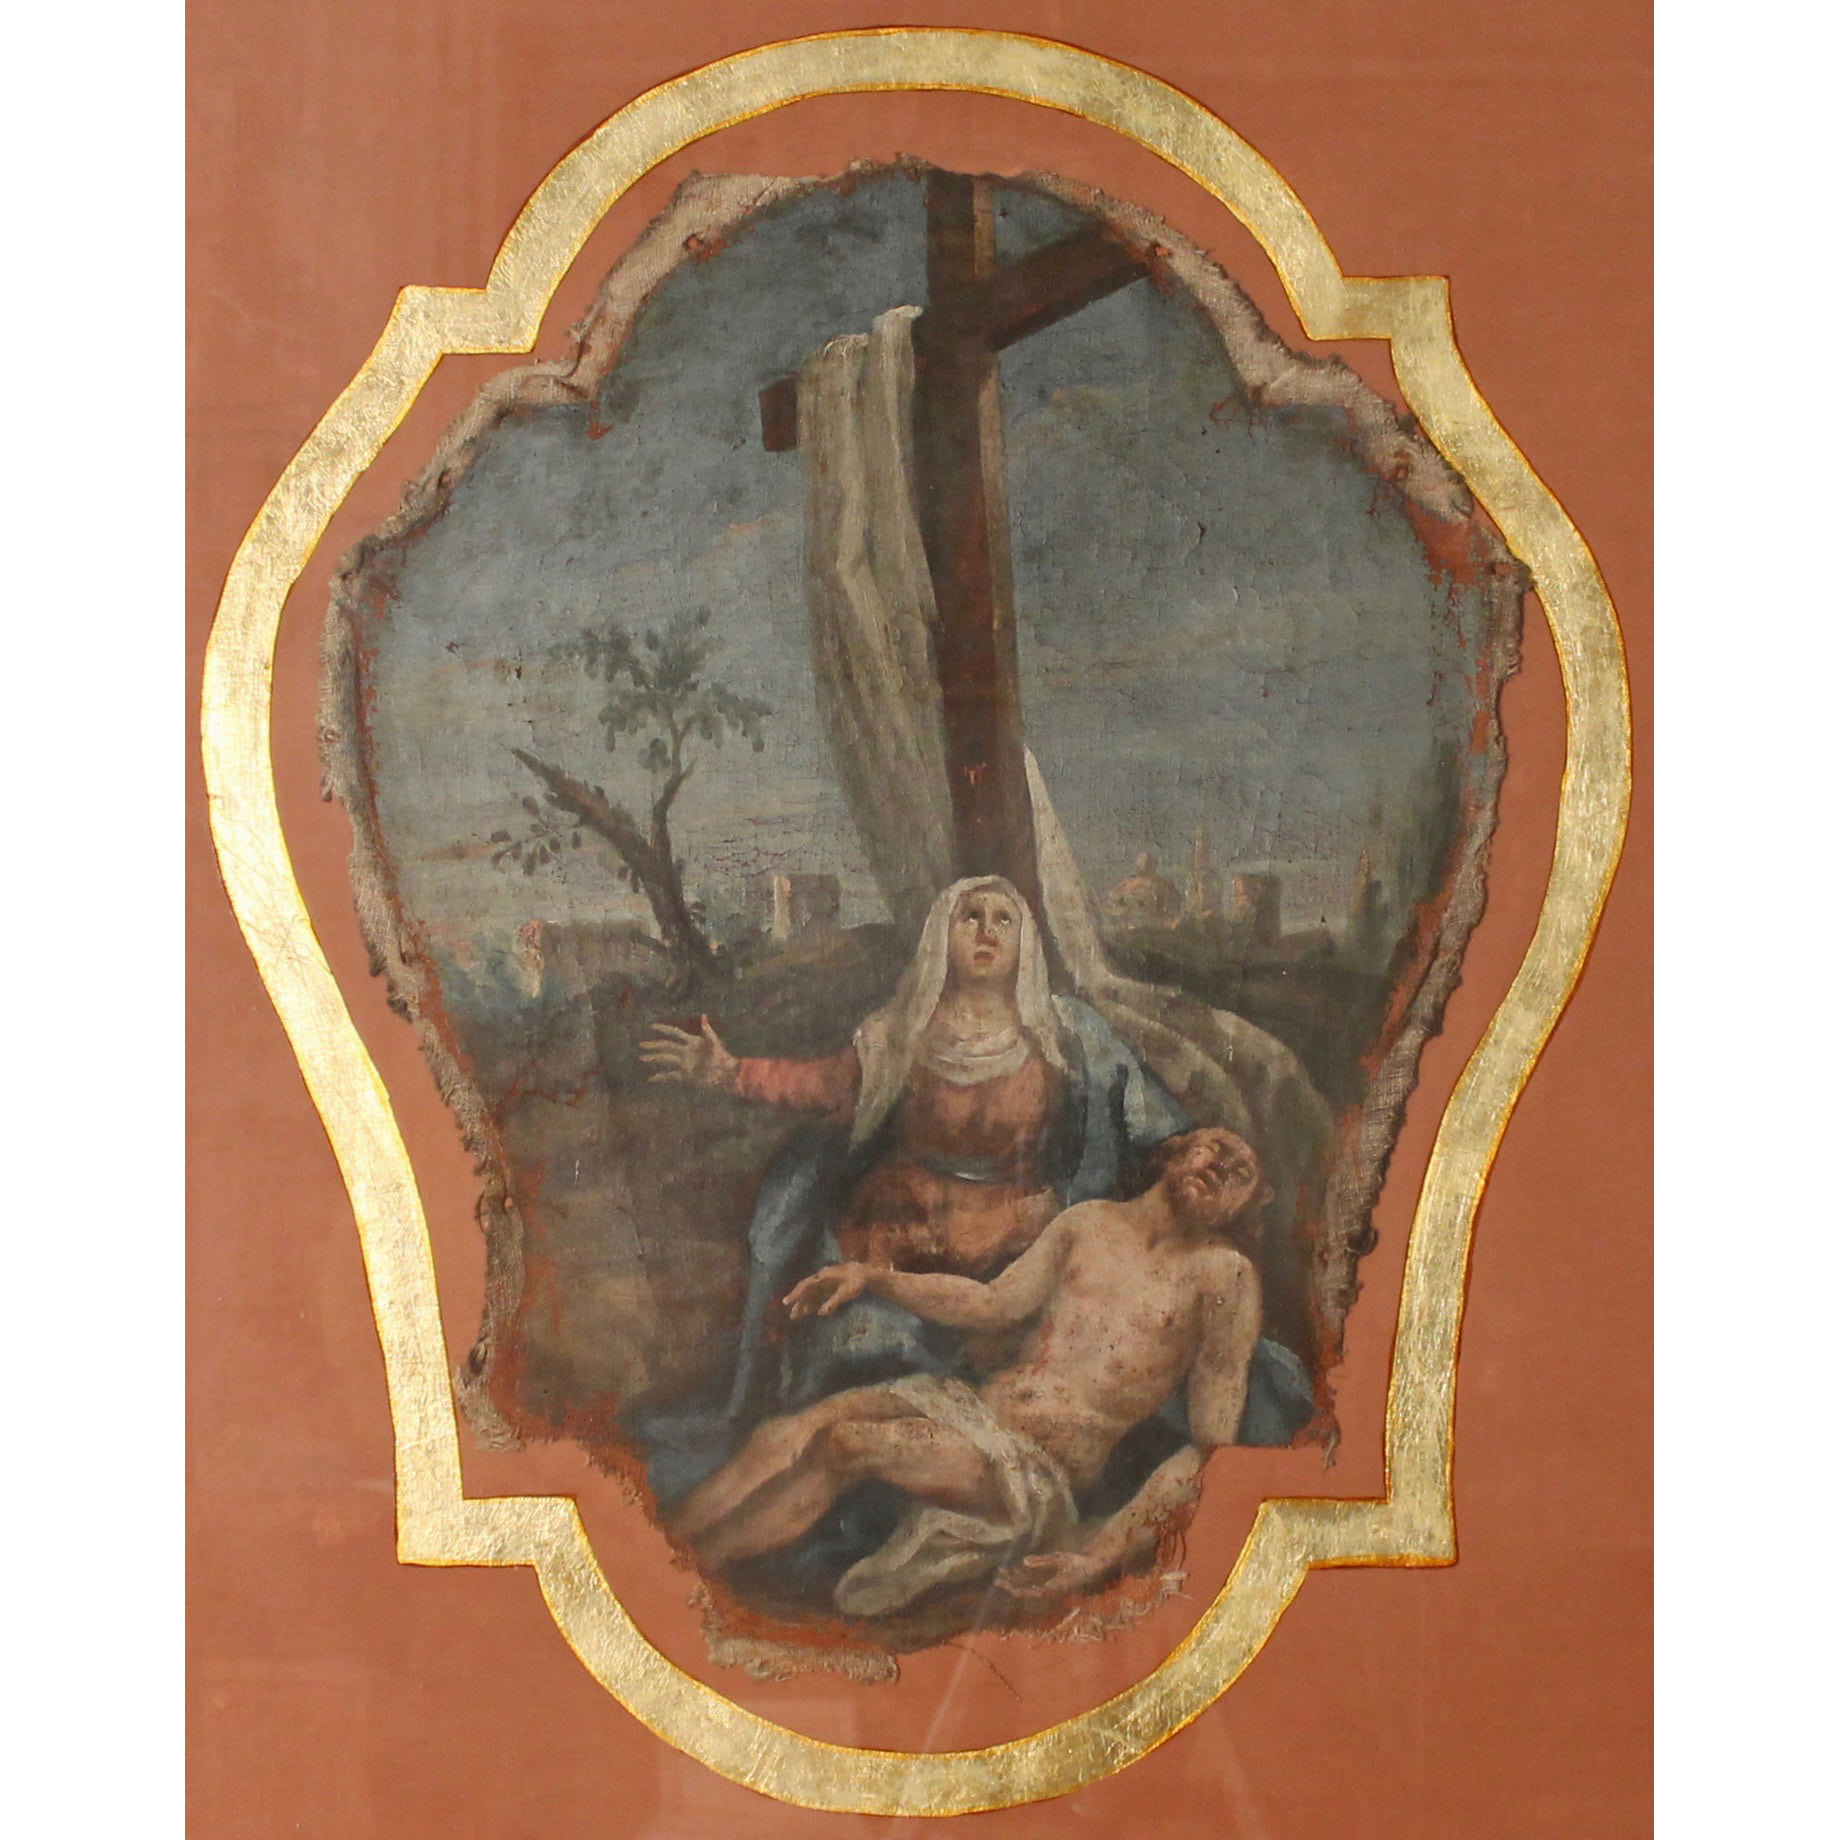 Scuola spagnola del secolo XVIII "La deposizione di Cristo" - Spanish school of the 18th century "The Deposition of Christ"